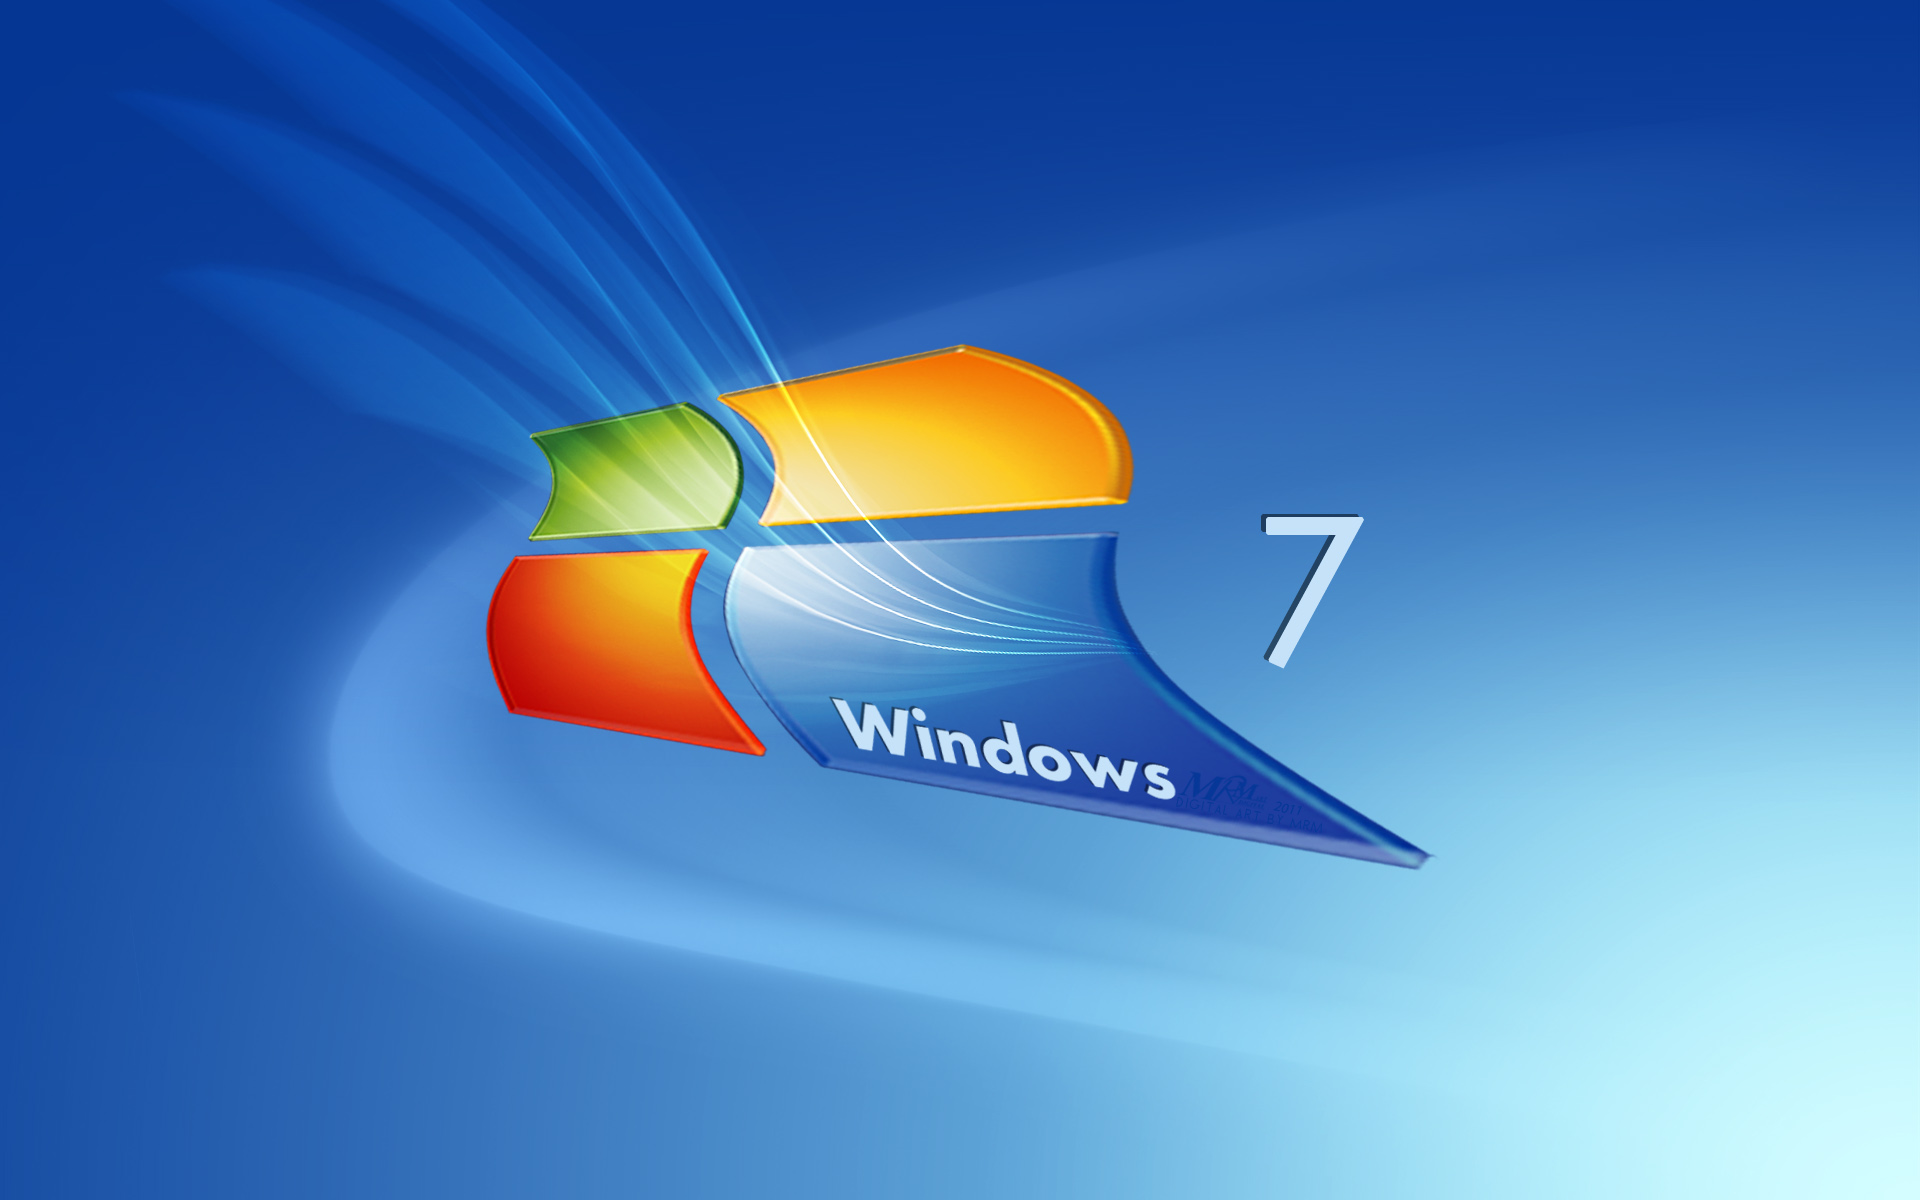 Hd Wallpapers For Windows 7 Pixelstalk Net